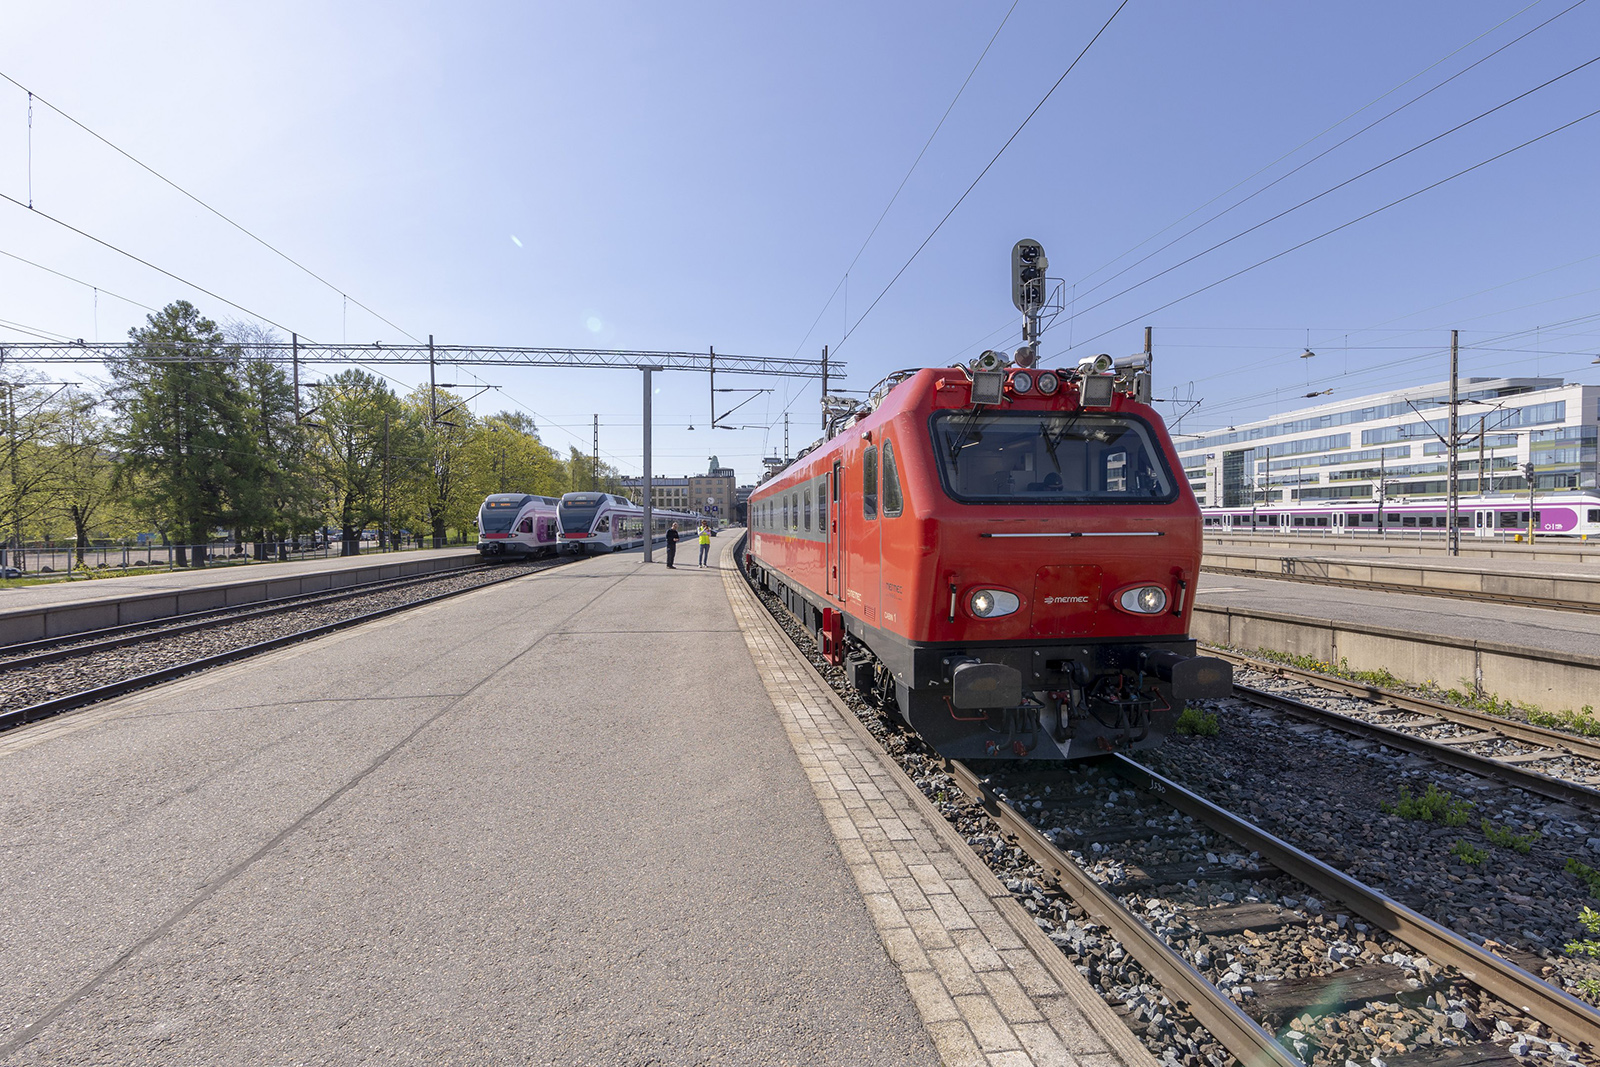 Radantarkastusvaunu MEERI Helsingin päärautatieasemalla. MEERIn kotitalli on Hyvinkäällä. Punainen väri on Väyläviraston entisen rautatieliikennejohtajan, tänä vuonna eläköityneen Markku Nummelinin valitsema.